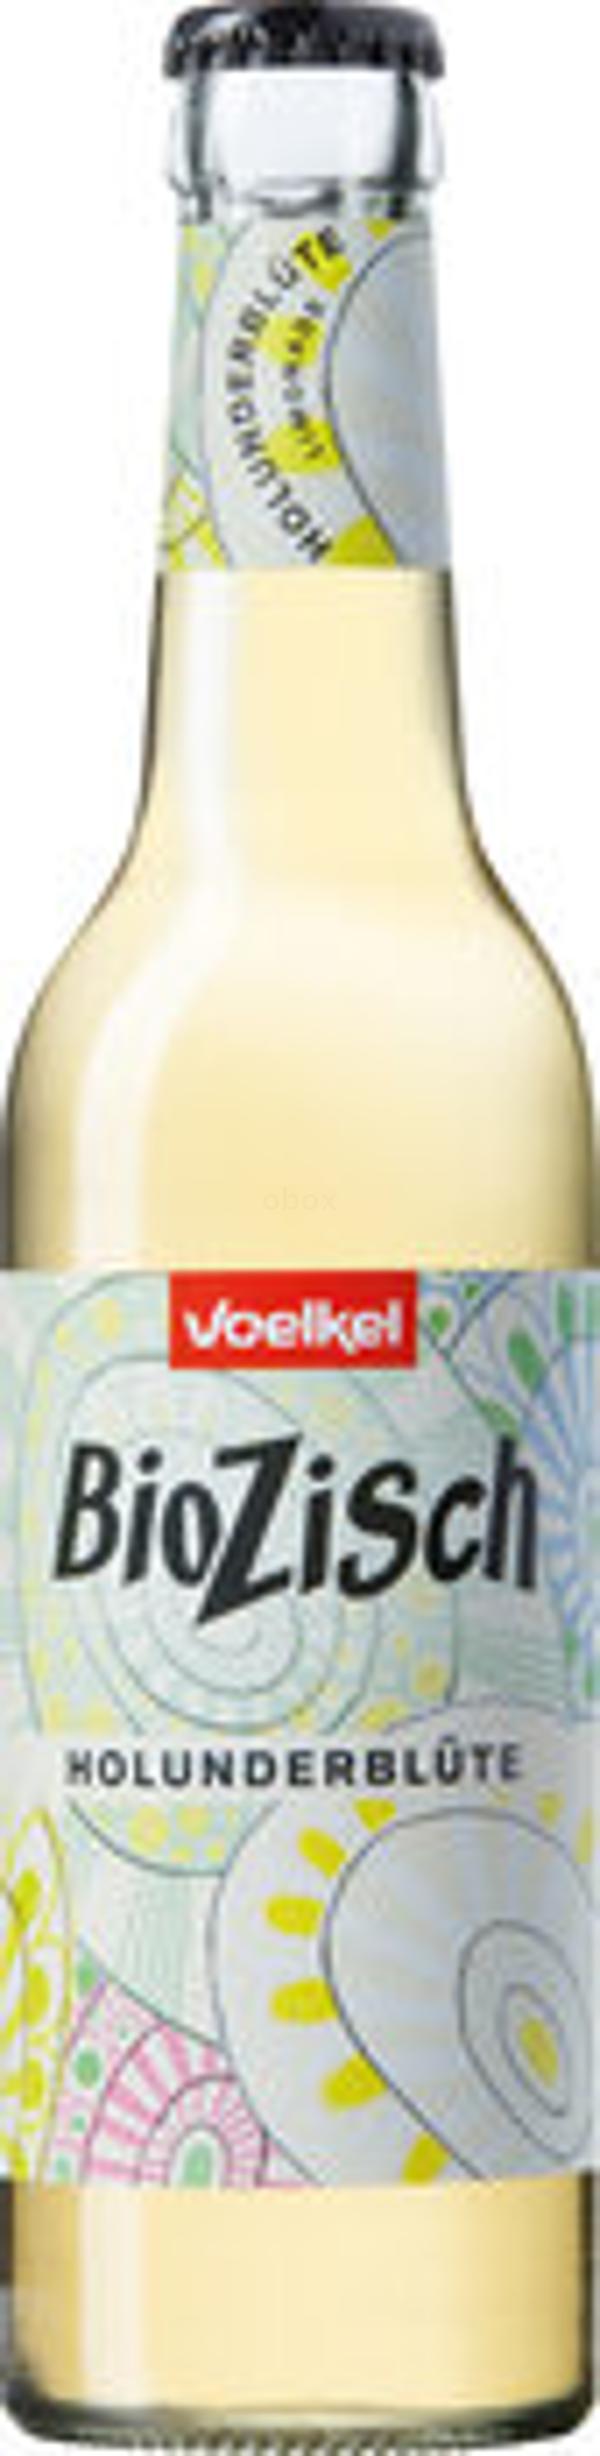 Produktfoto zu BioZisch Holunderblüte, 0,33l